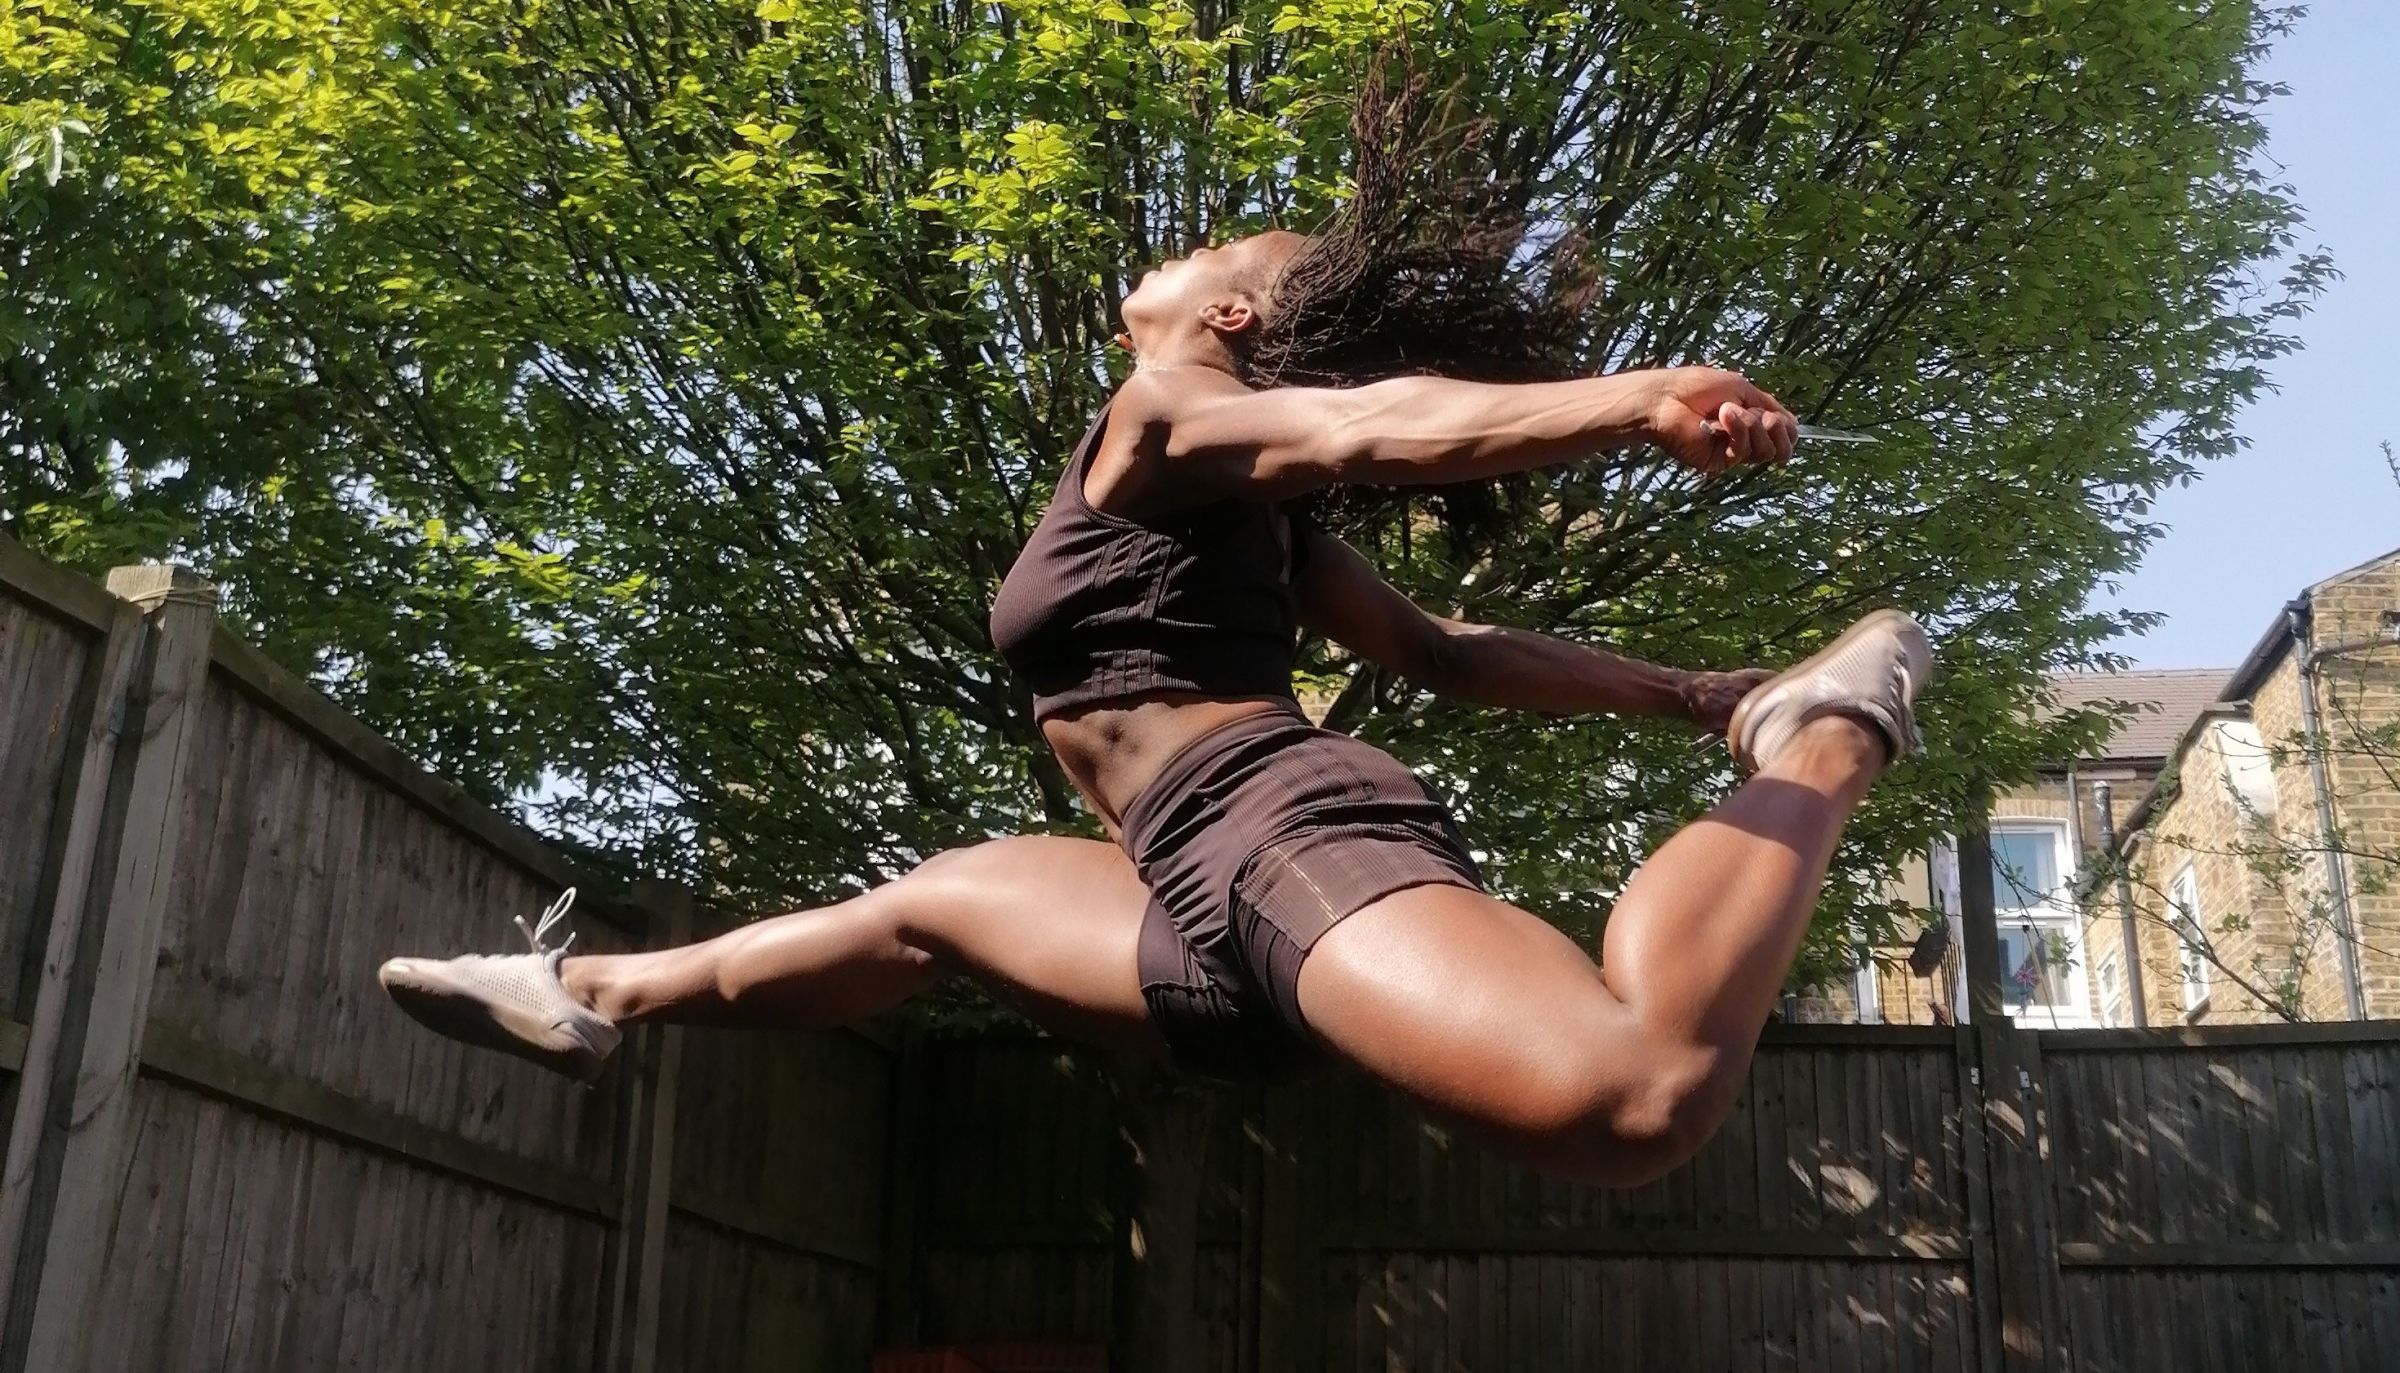 A dancer leaps through the air